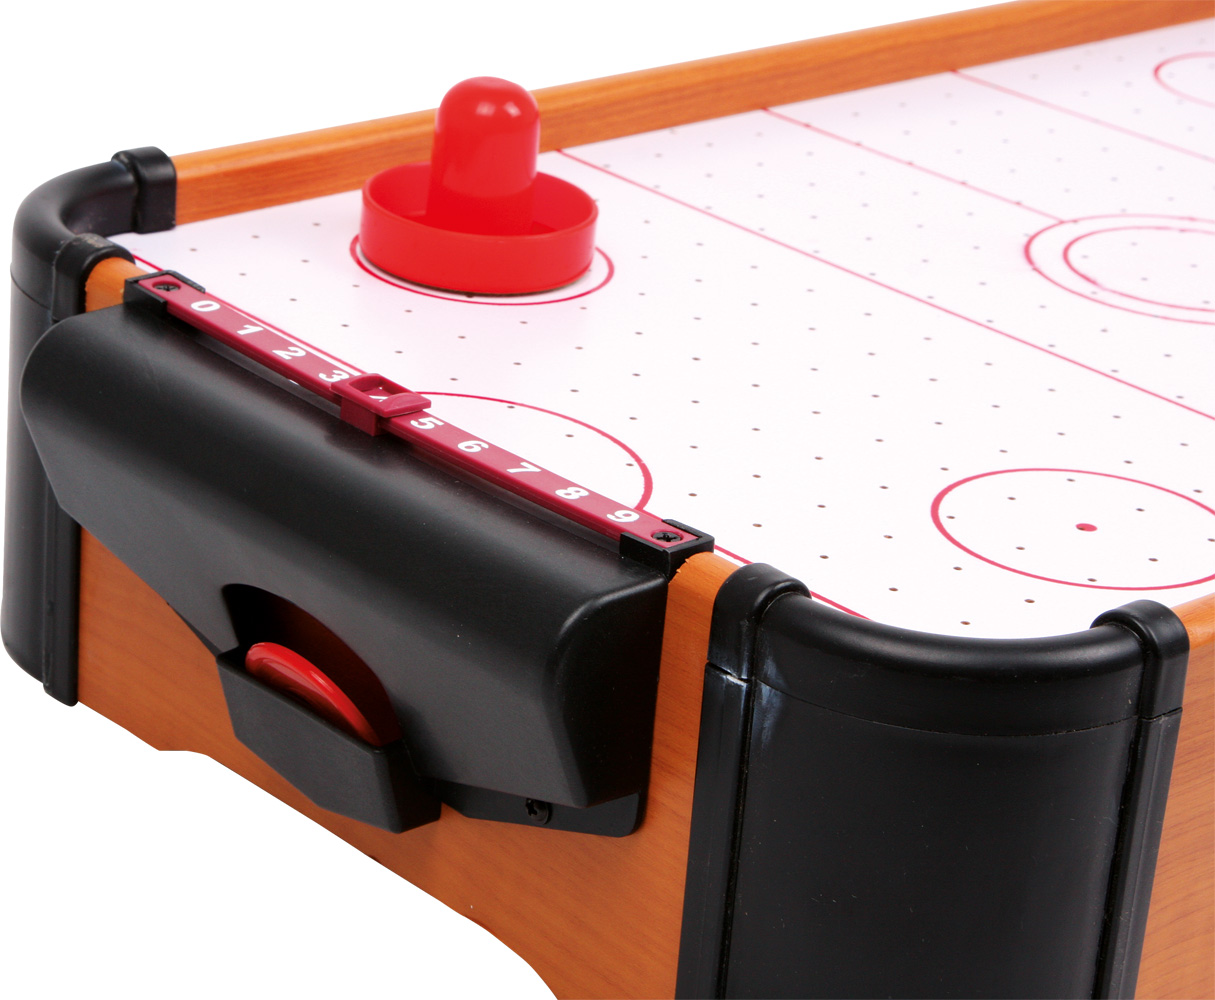 Small Foot by Legler Tisch-Air Hockey mit 1 Puck und 2 Schlägern sowie Punkteschieber fördert die Motorik und Hand-Augen-Koordination kann auf jeder Tischplatte platziert werden